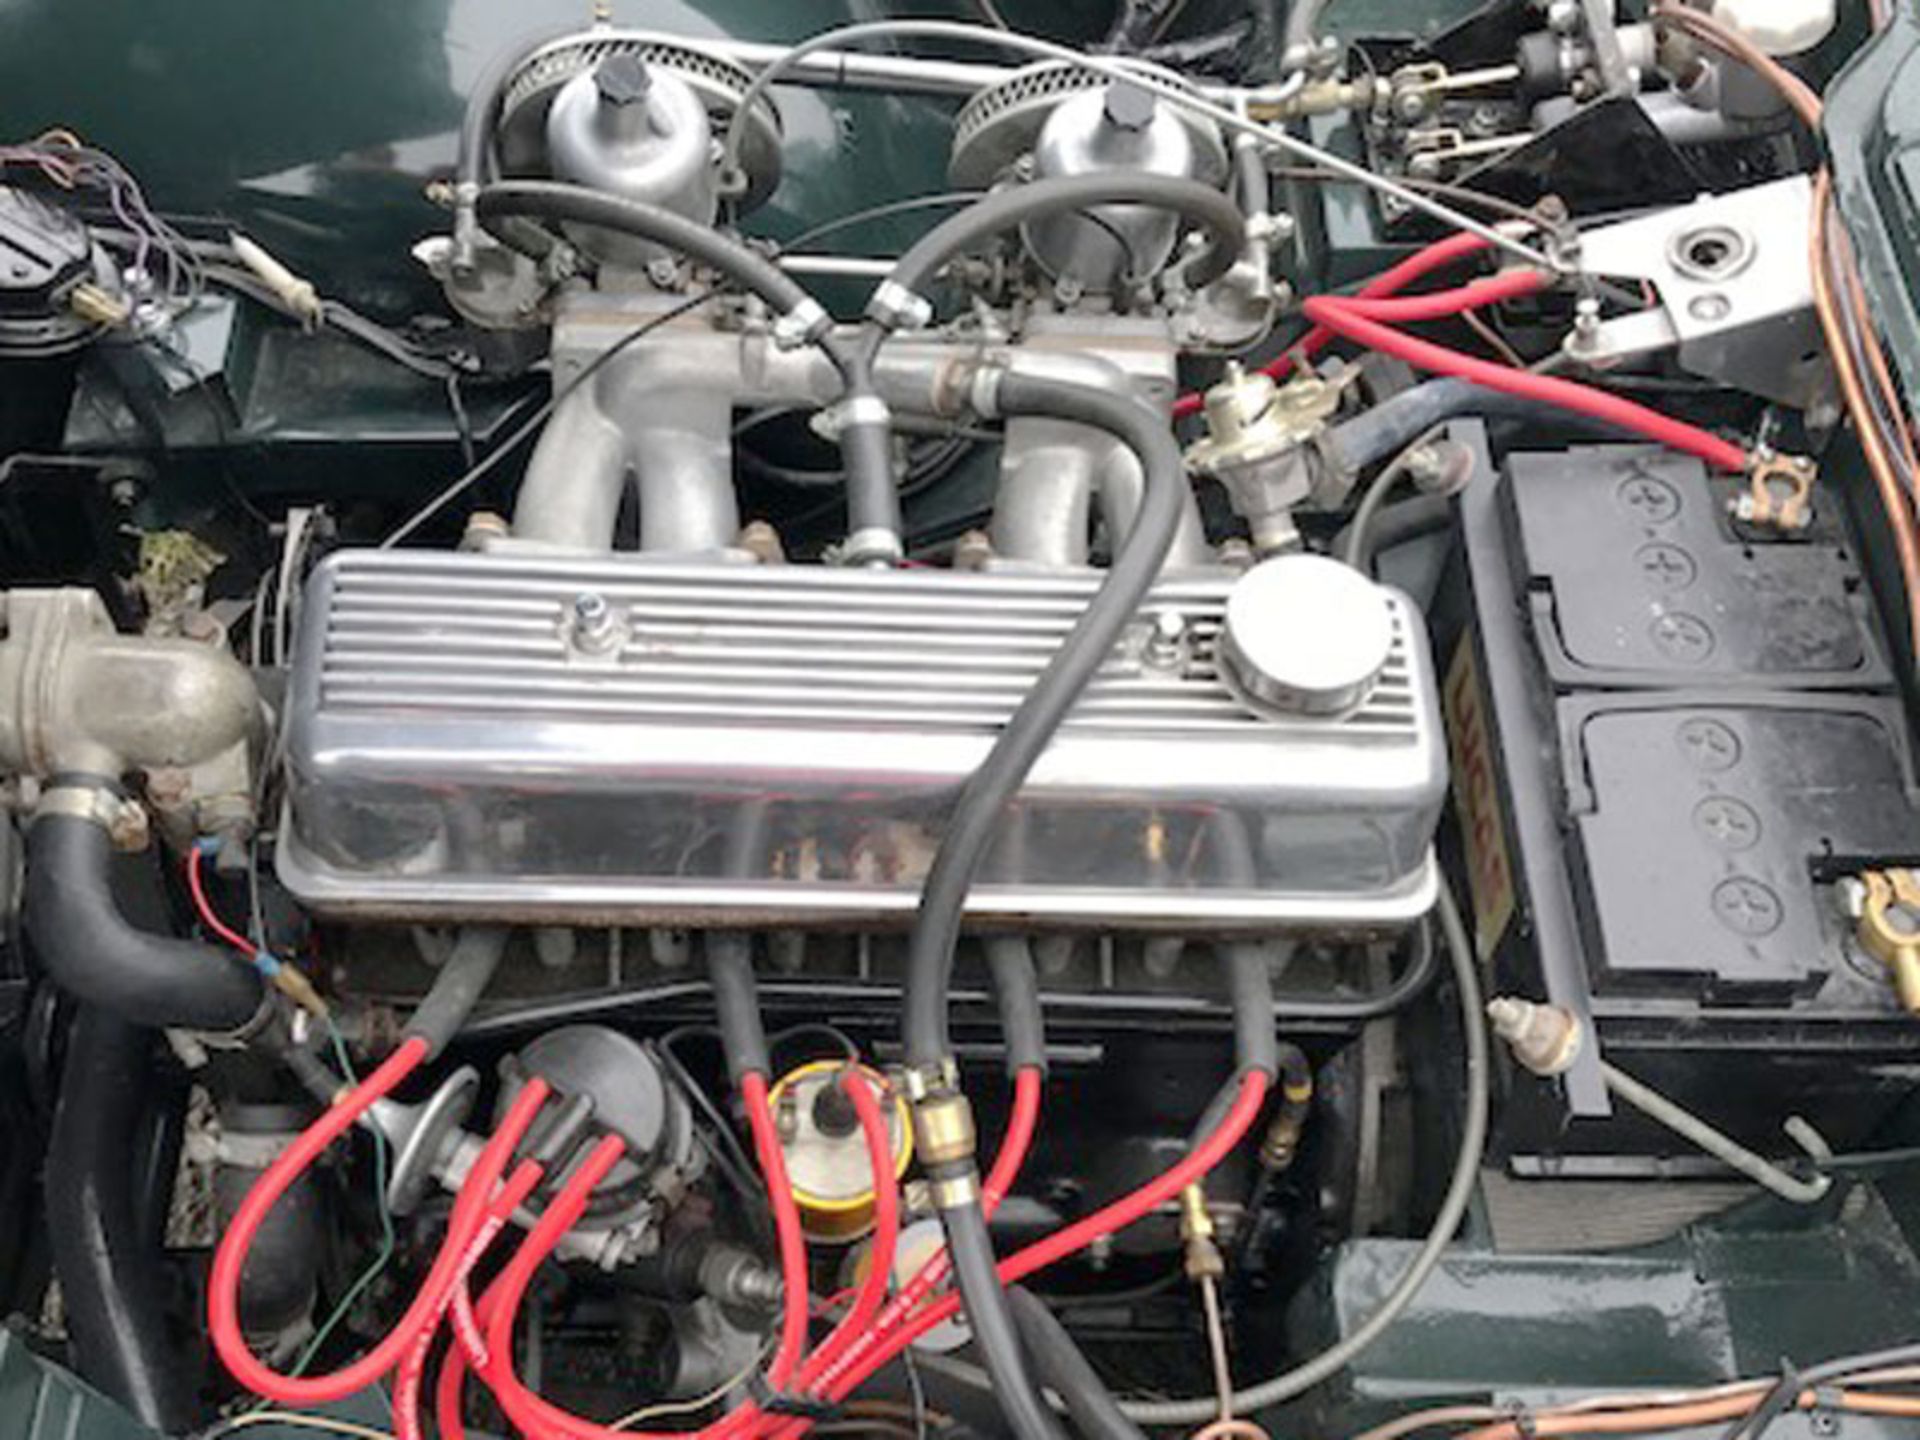 1965 Triumph TR4A - Image 6 of 6